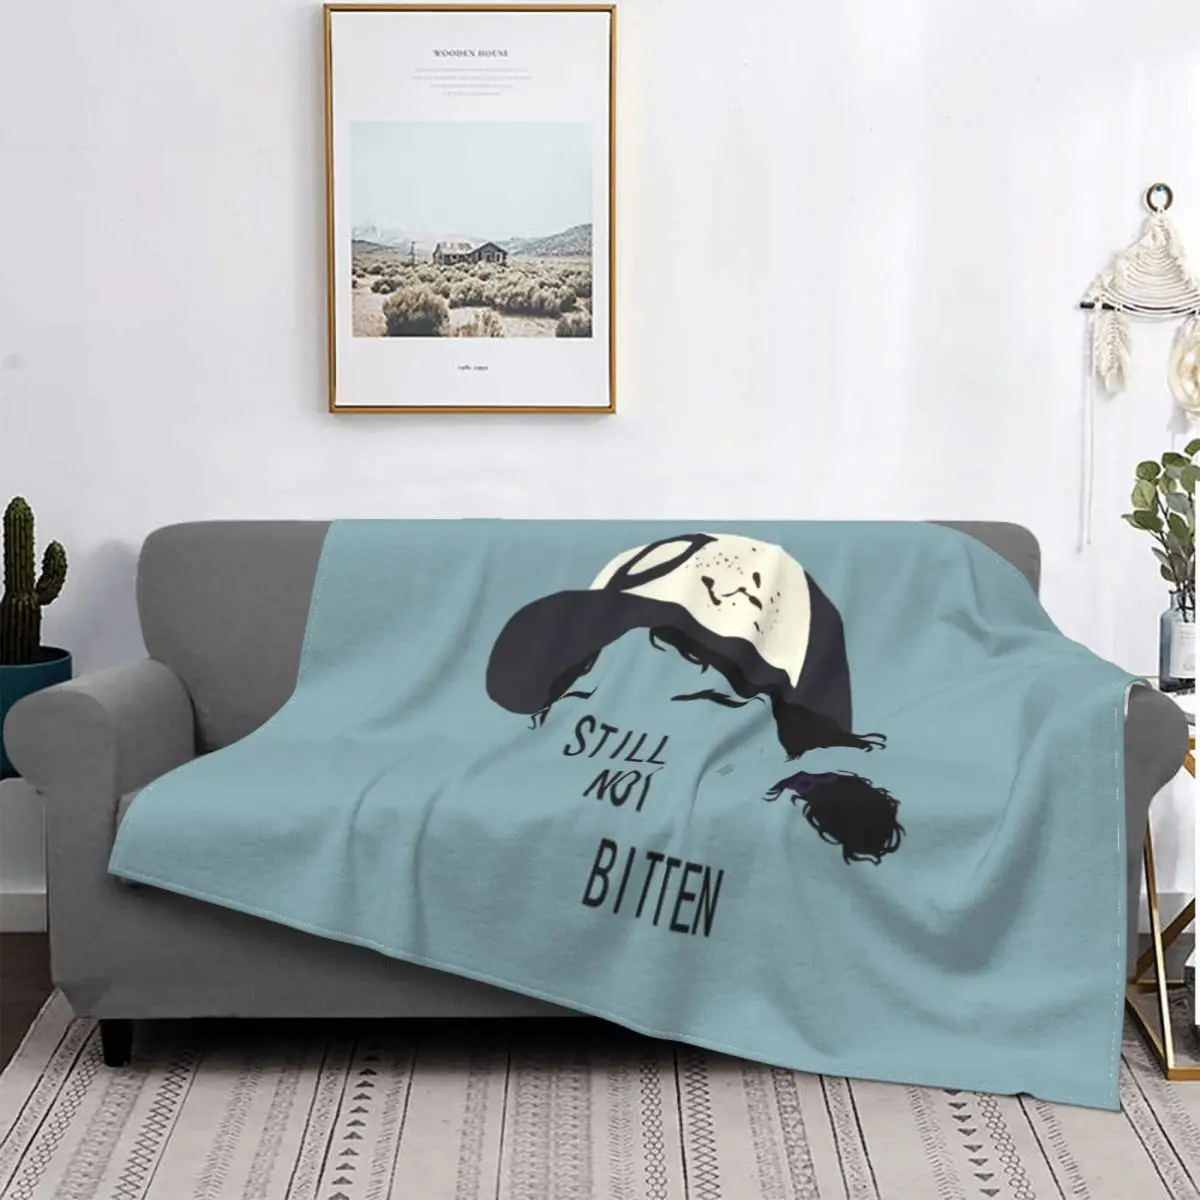 

Плюшевое одеяло с узором «Ходячие мертвецы» Карл Гримс, потрясающее одеяло из фильма «ужасы» для кровати, дивана, 150*125 см